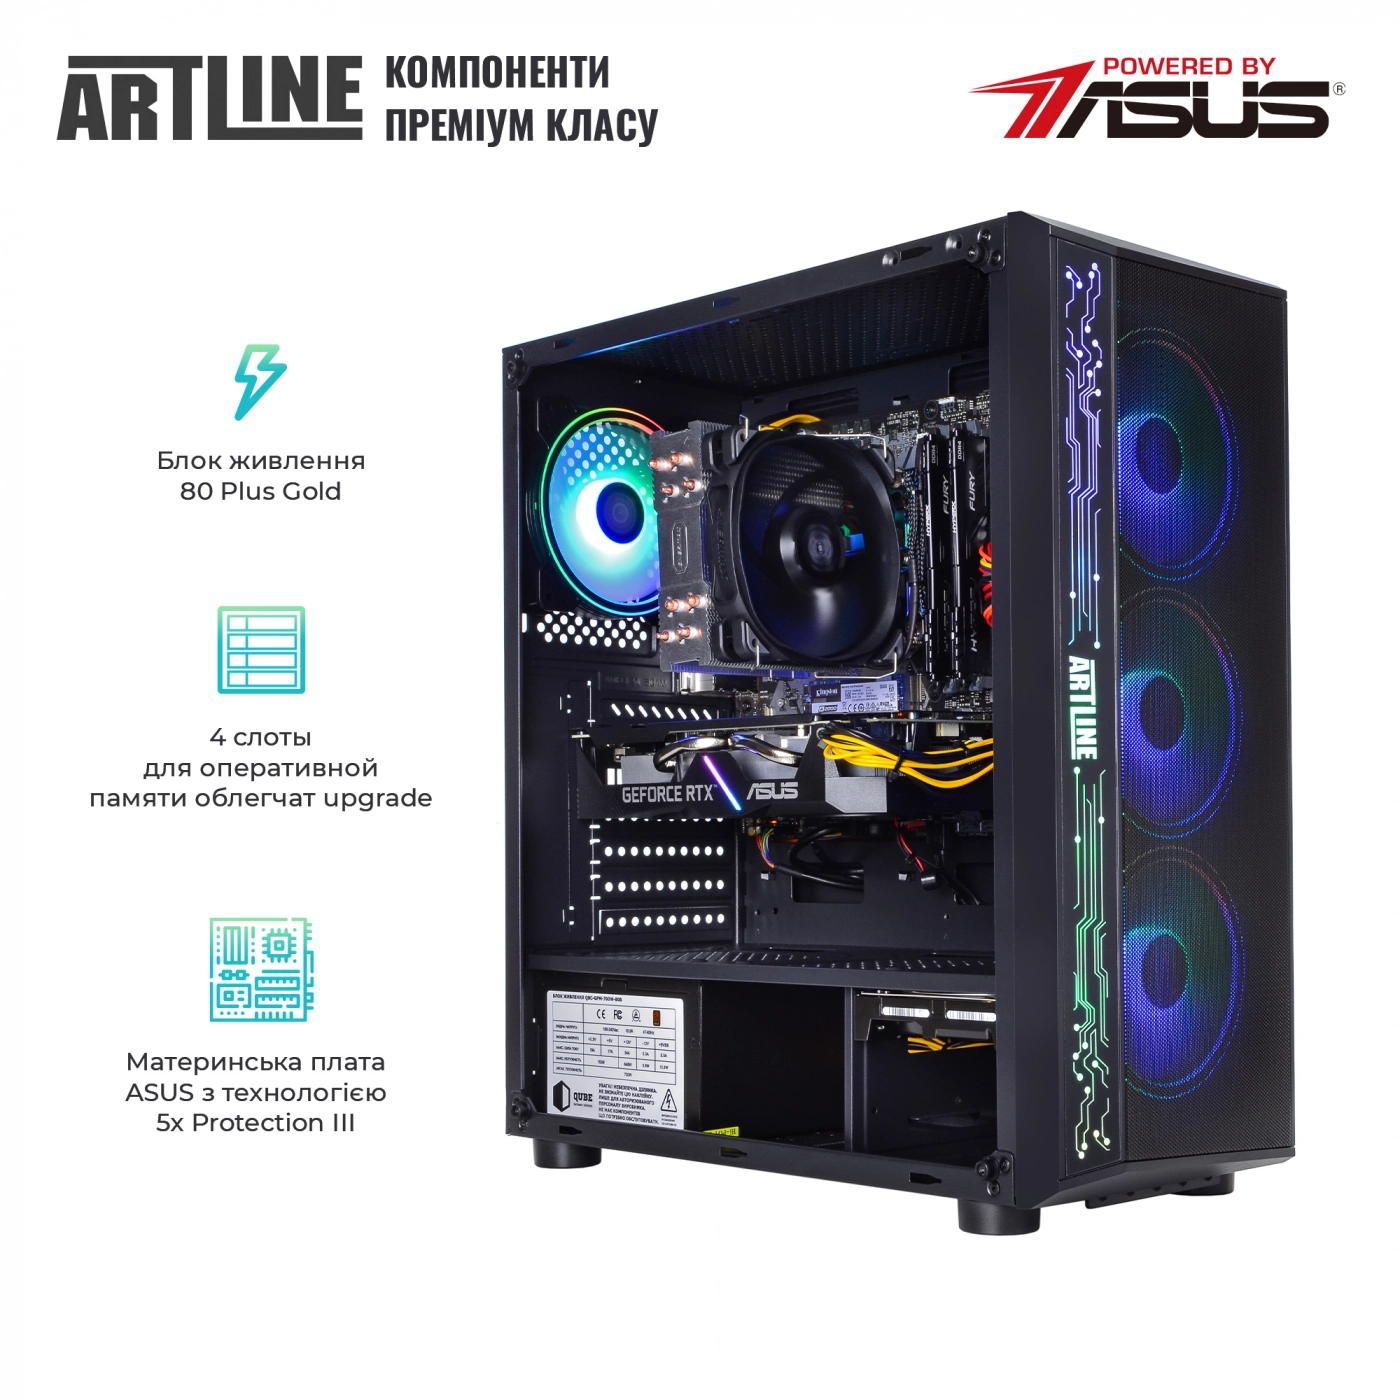 Купить Компьютер ARTLINE Gaming X77v46 - фото 3